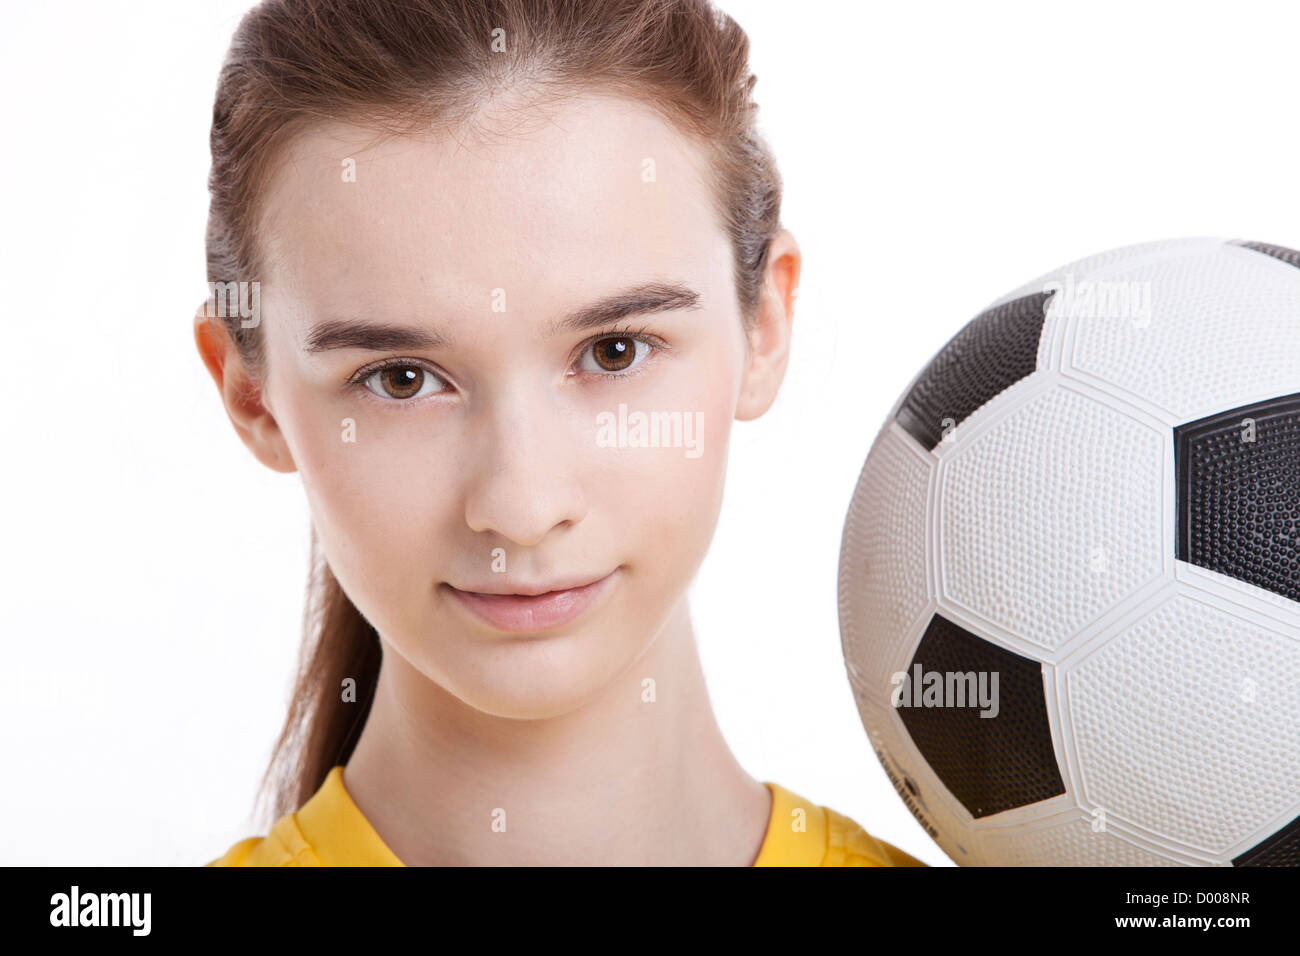 Porträt der jungen Frau mit Fußball vor weißem Hintergrund Stockfoto